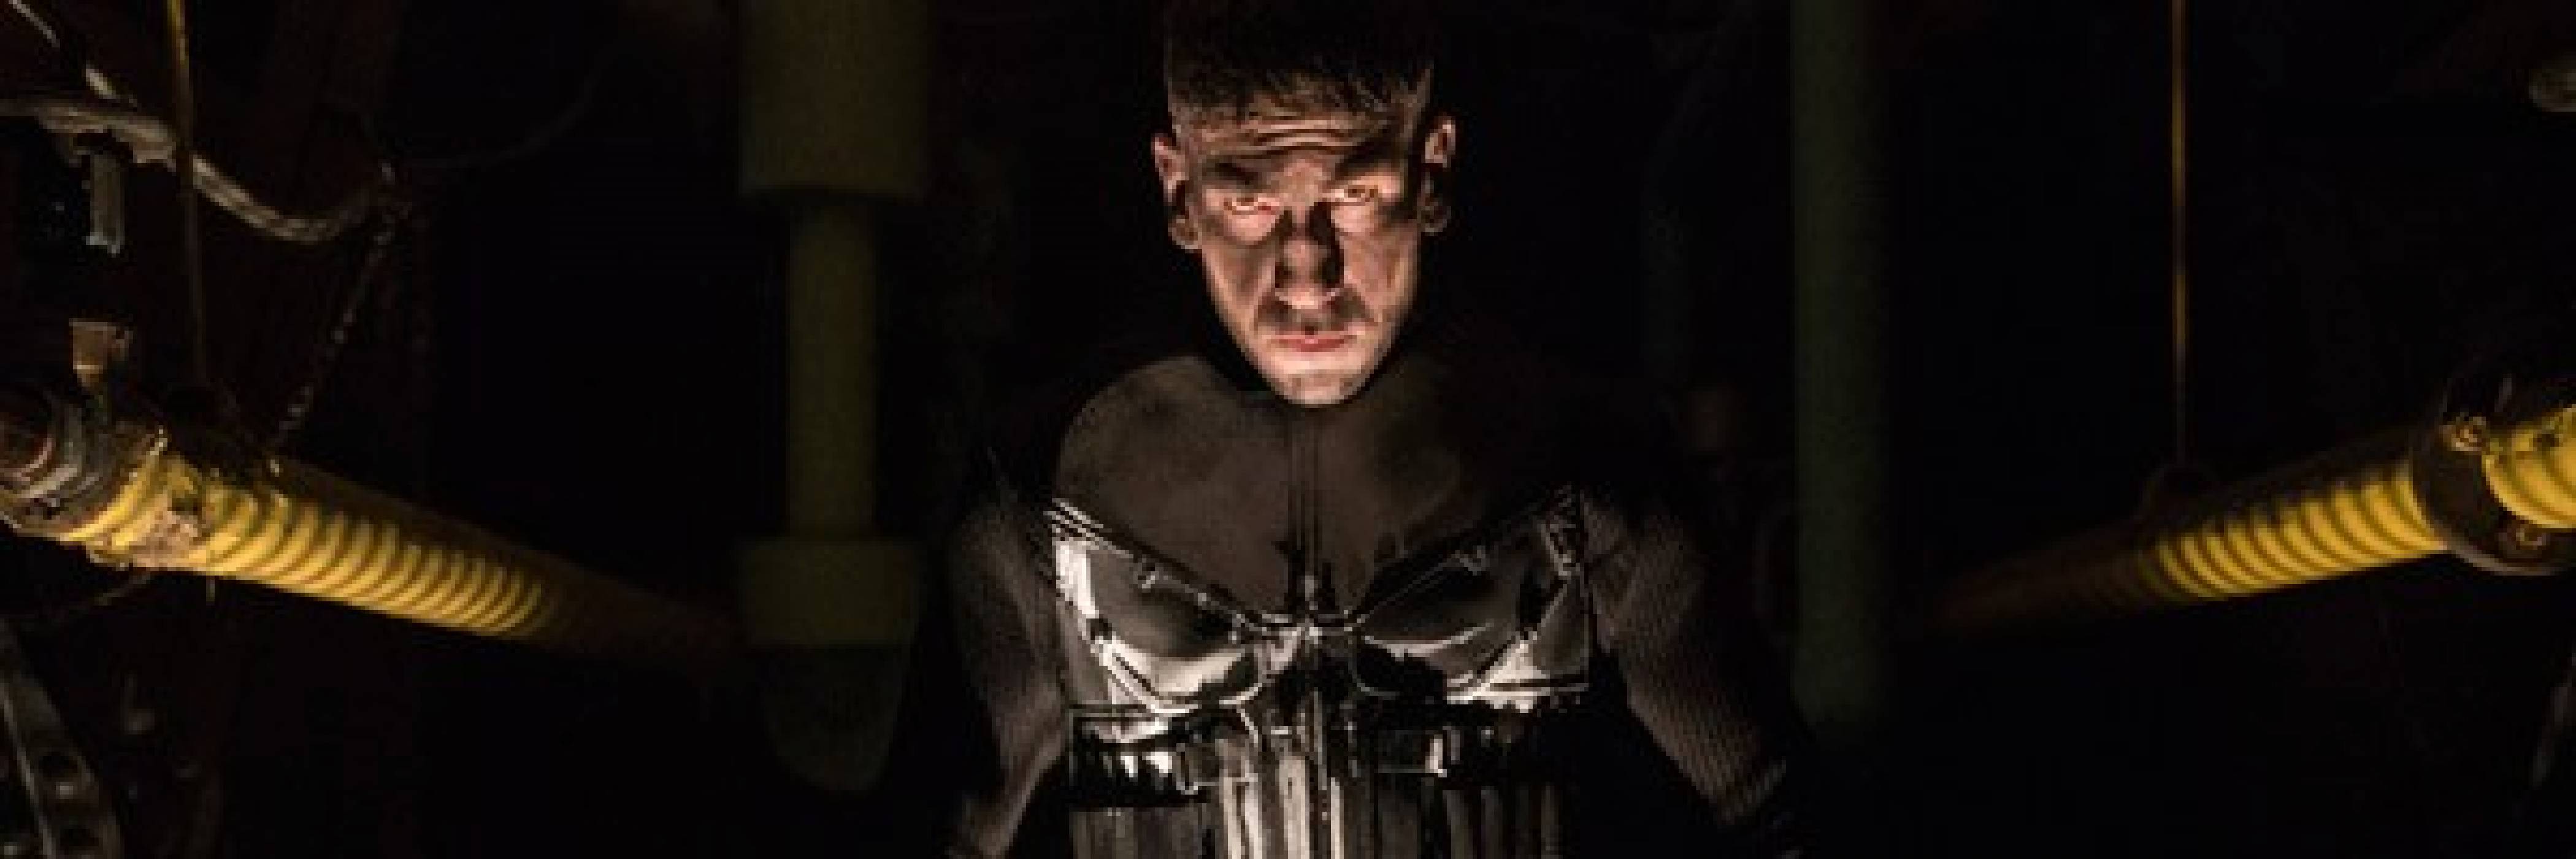 Премиерната дата на The Punisher стана ясна в новия трейлър на сериала